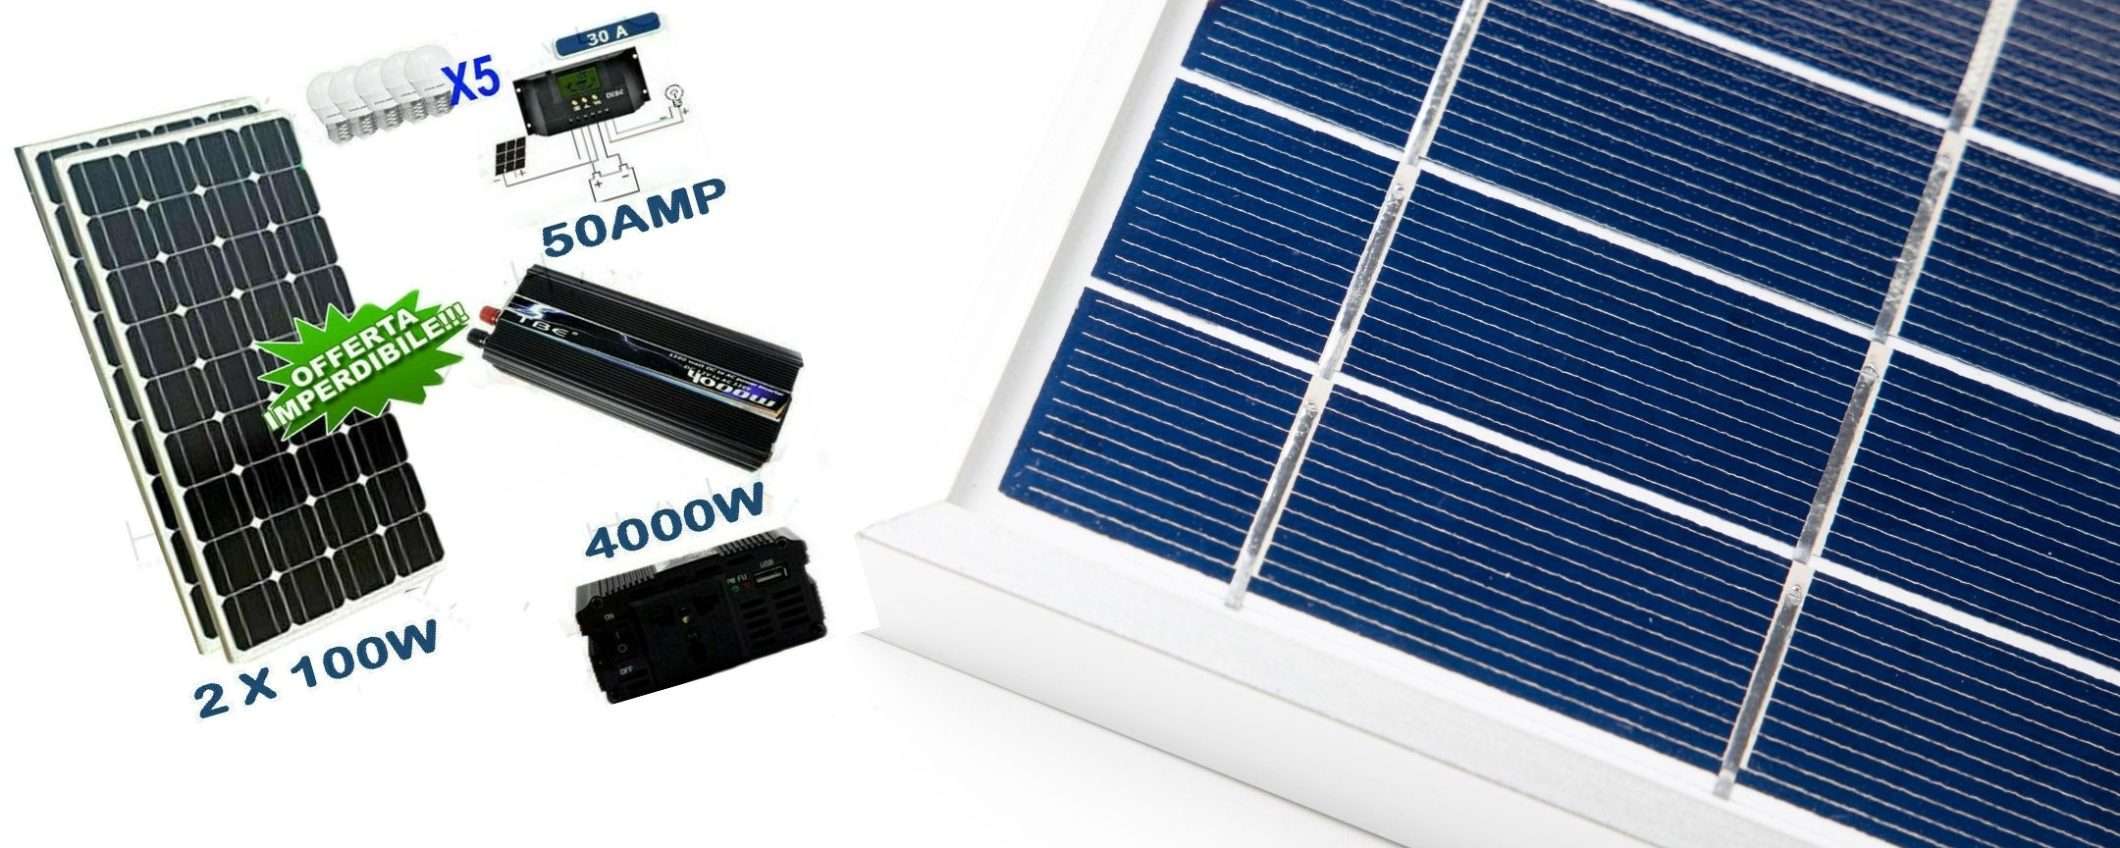 Kit fotovoltaico 2KW giorno con inverter: mini centrale a prezzo WOW